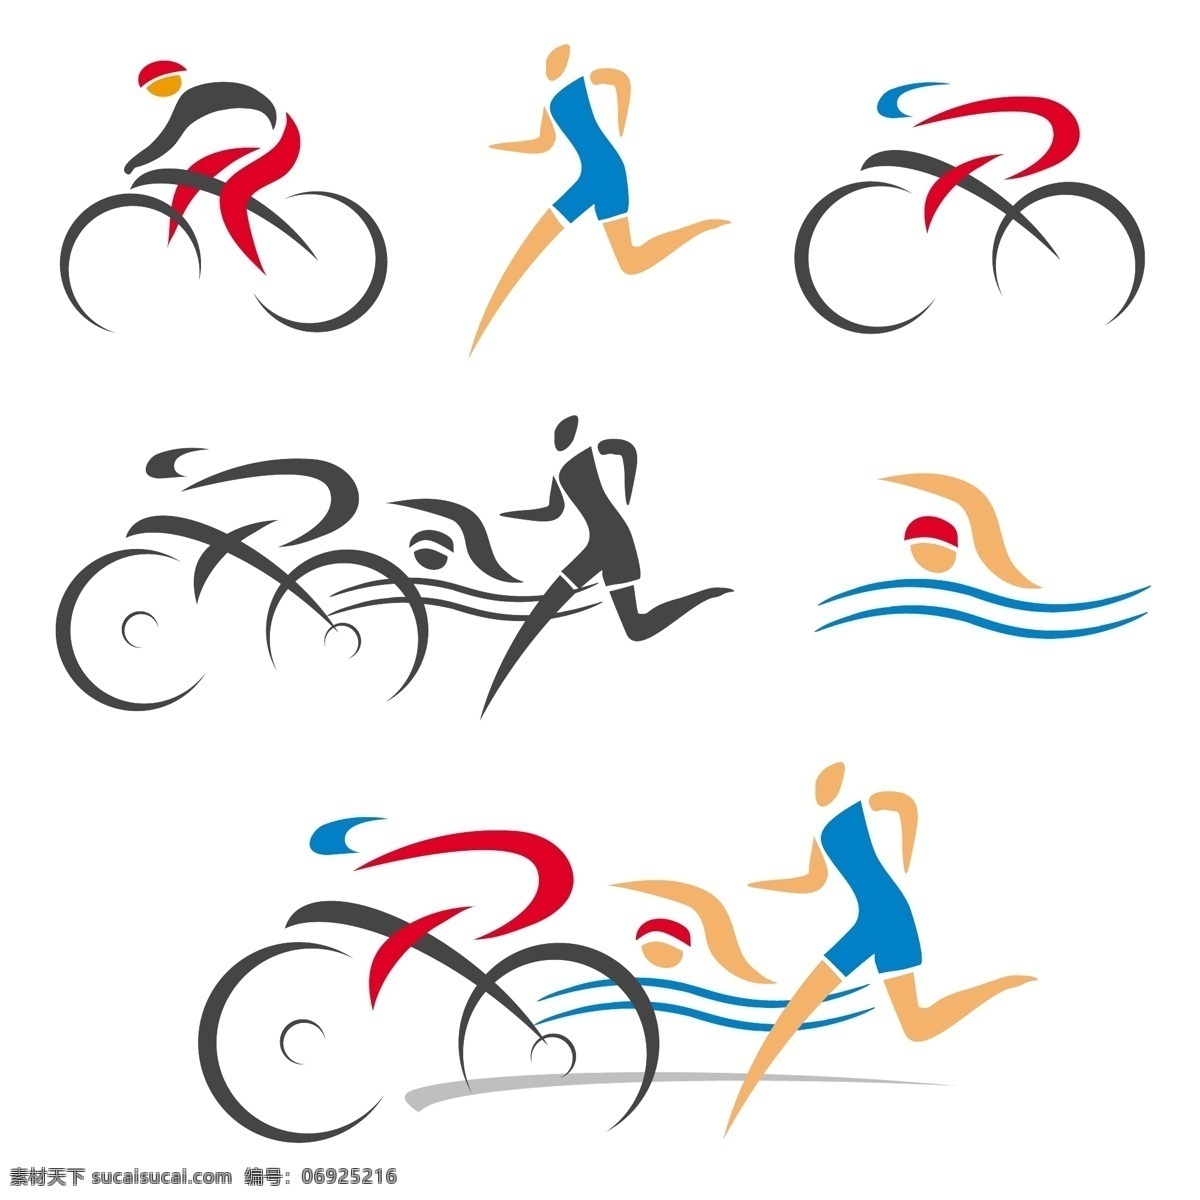 体育运动 人物 图标 抽象人物图标 创意 奥运会 亚运会 骑自行车 跑步 赛跑 游泳 矢量 标志 标签 logo 小图标 标识标志图标